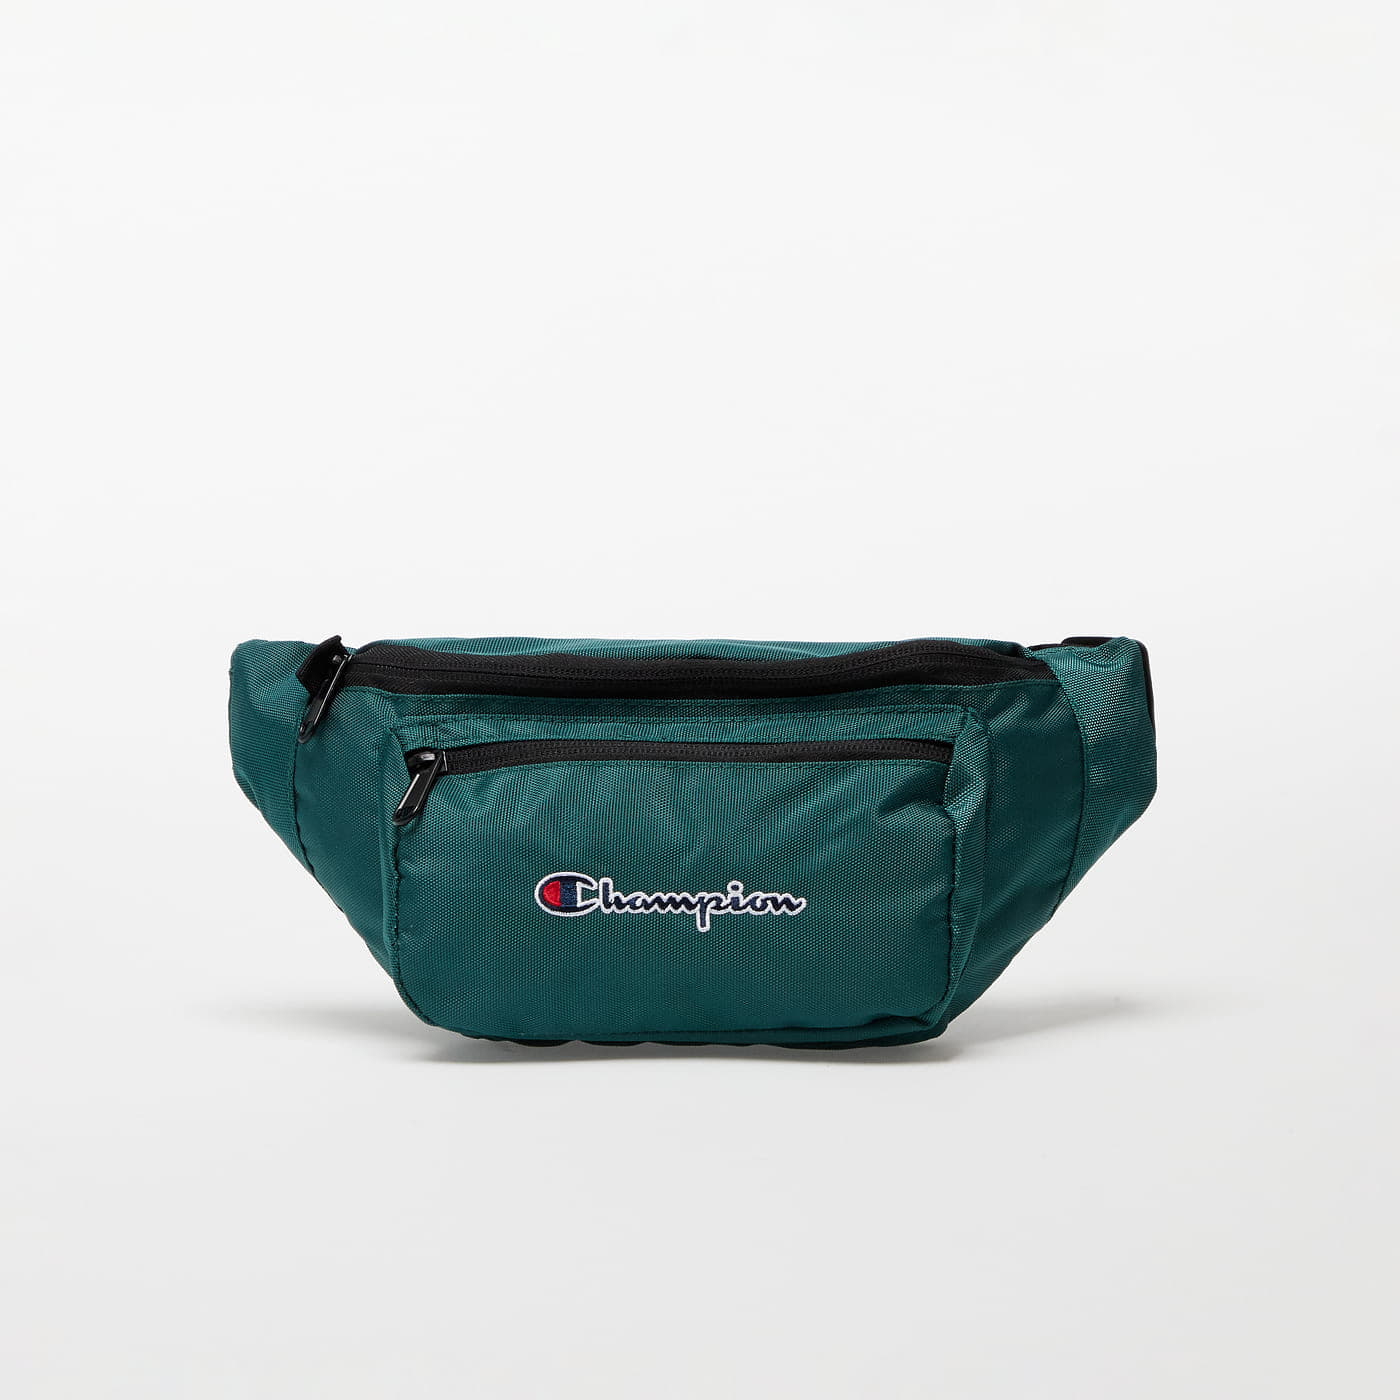 Hip bags Champion Rochester Bags Belt Bag Green